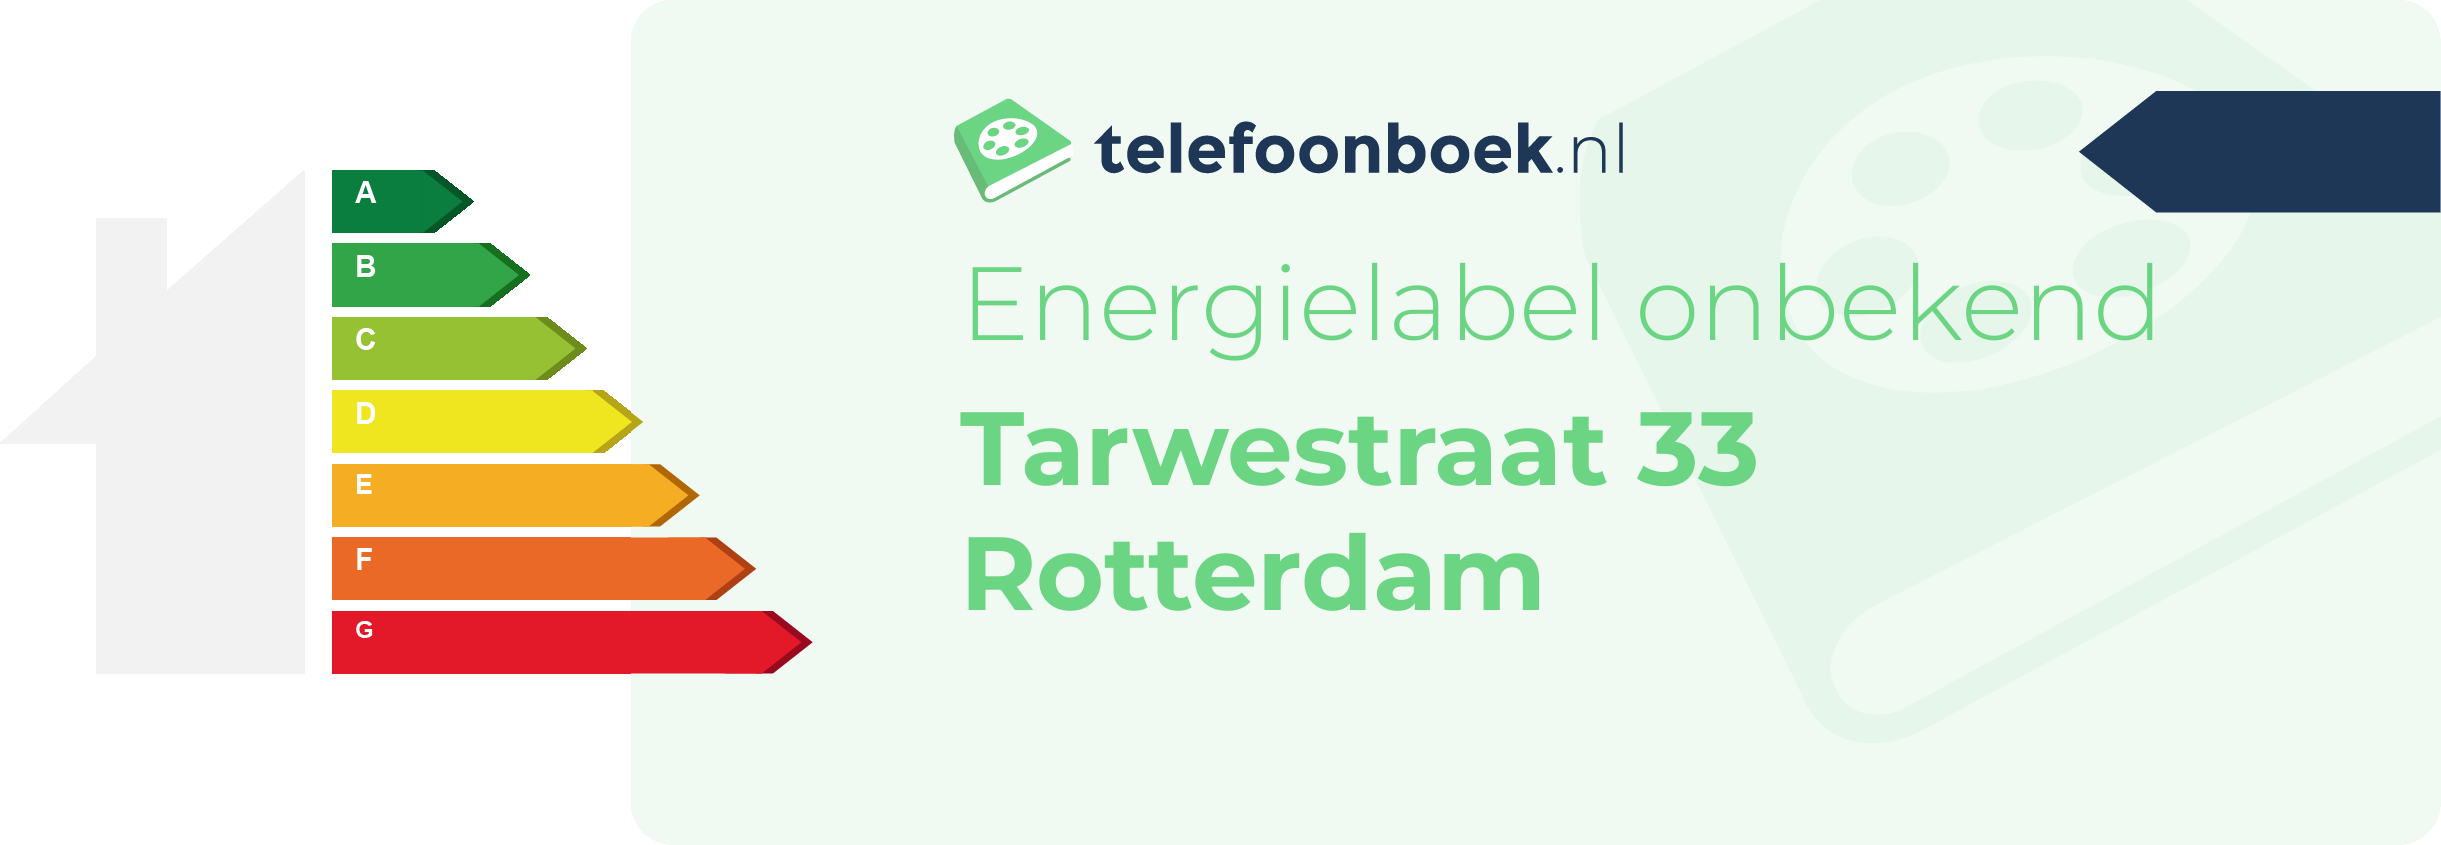 Energielabel Tarwestraat 33 Rotterdam